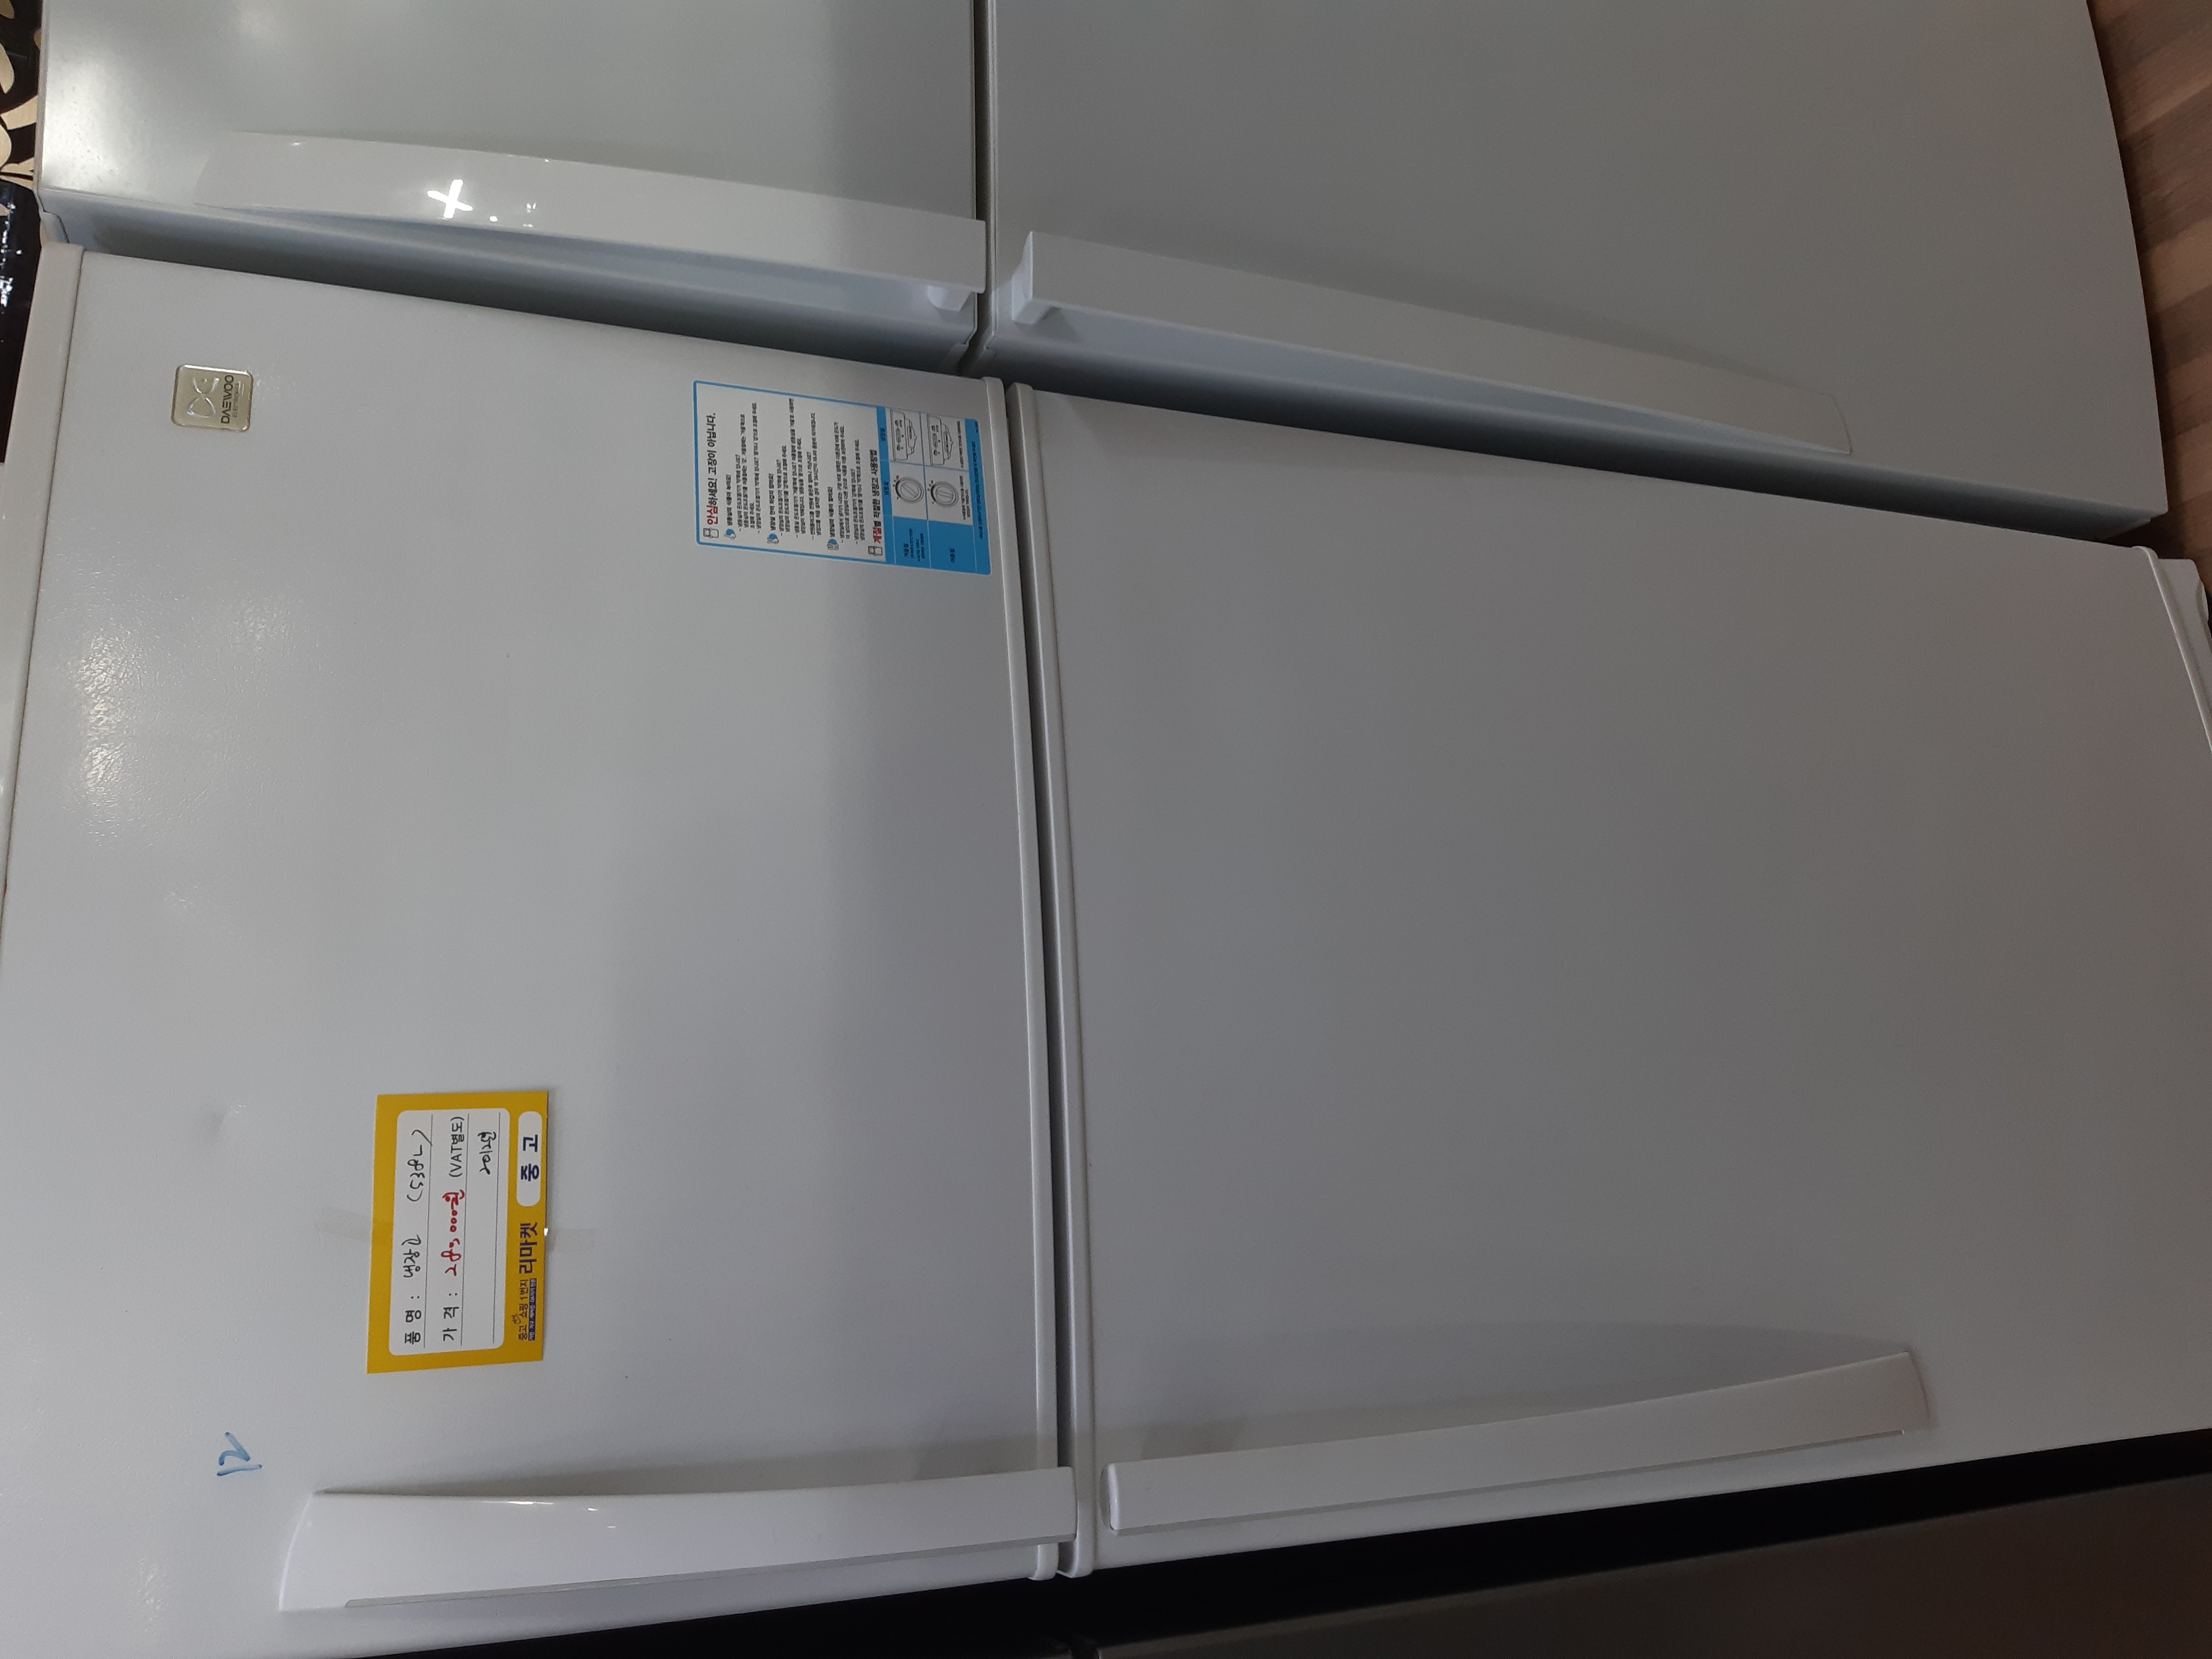 대우 538L 냉장고